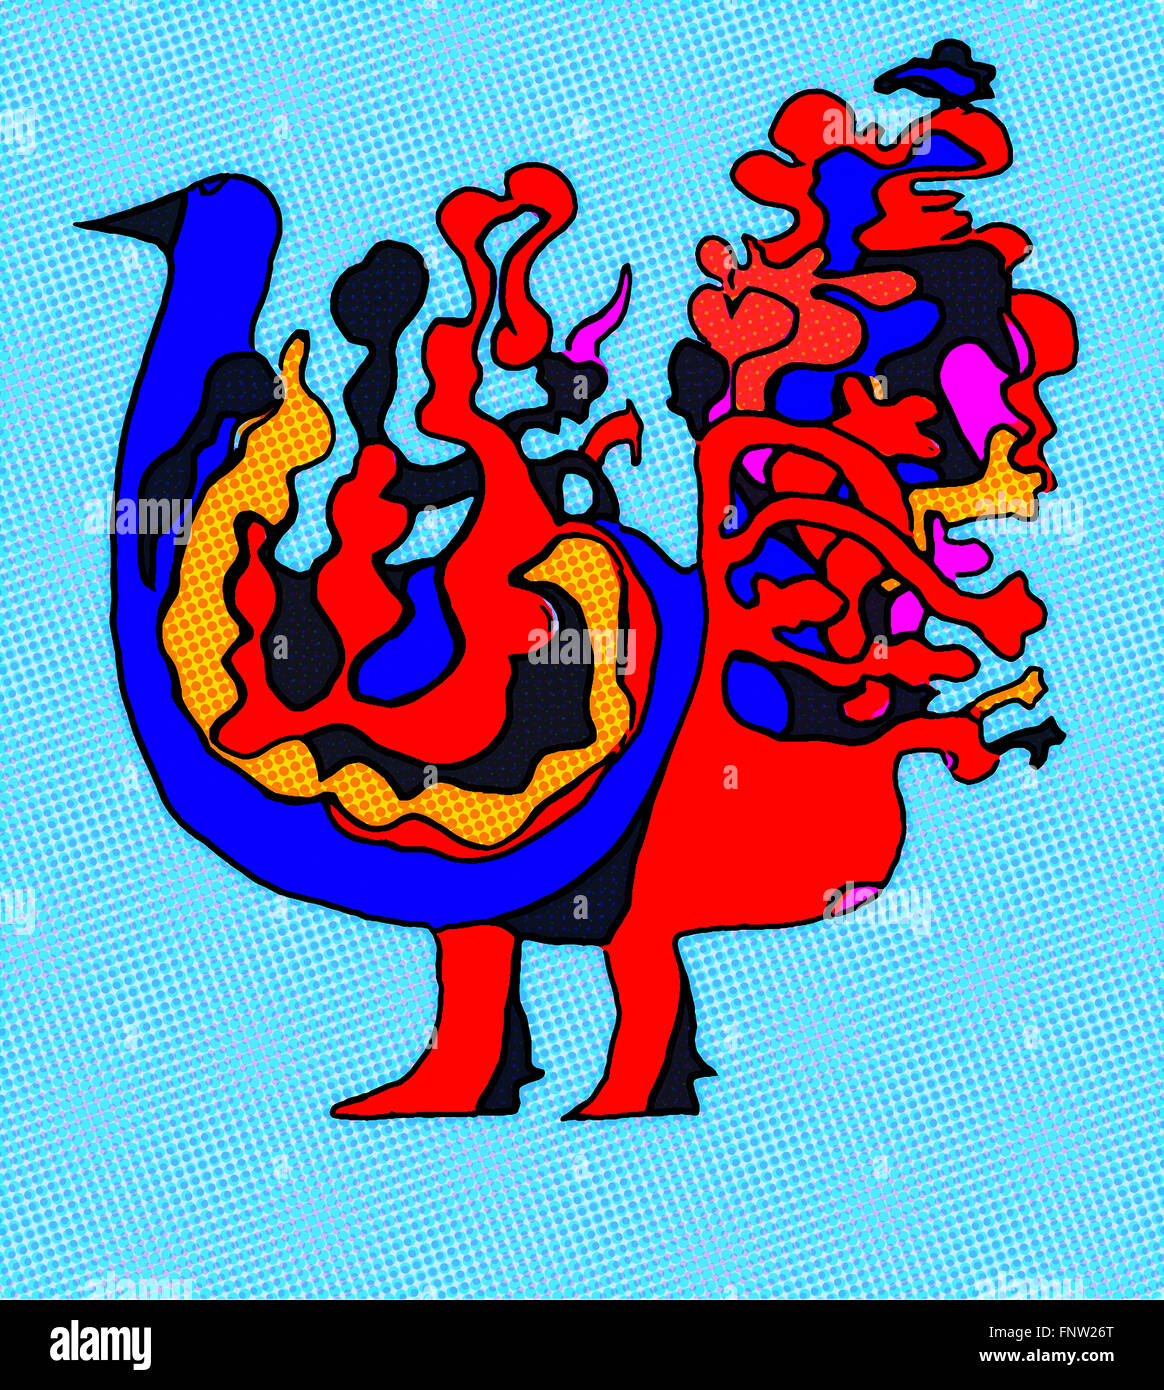 Image abstraite de la fantaisie oiseau en pop art illustration design colorés sur fond bleu clair avec de la texture et des points. Banque D'Images